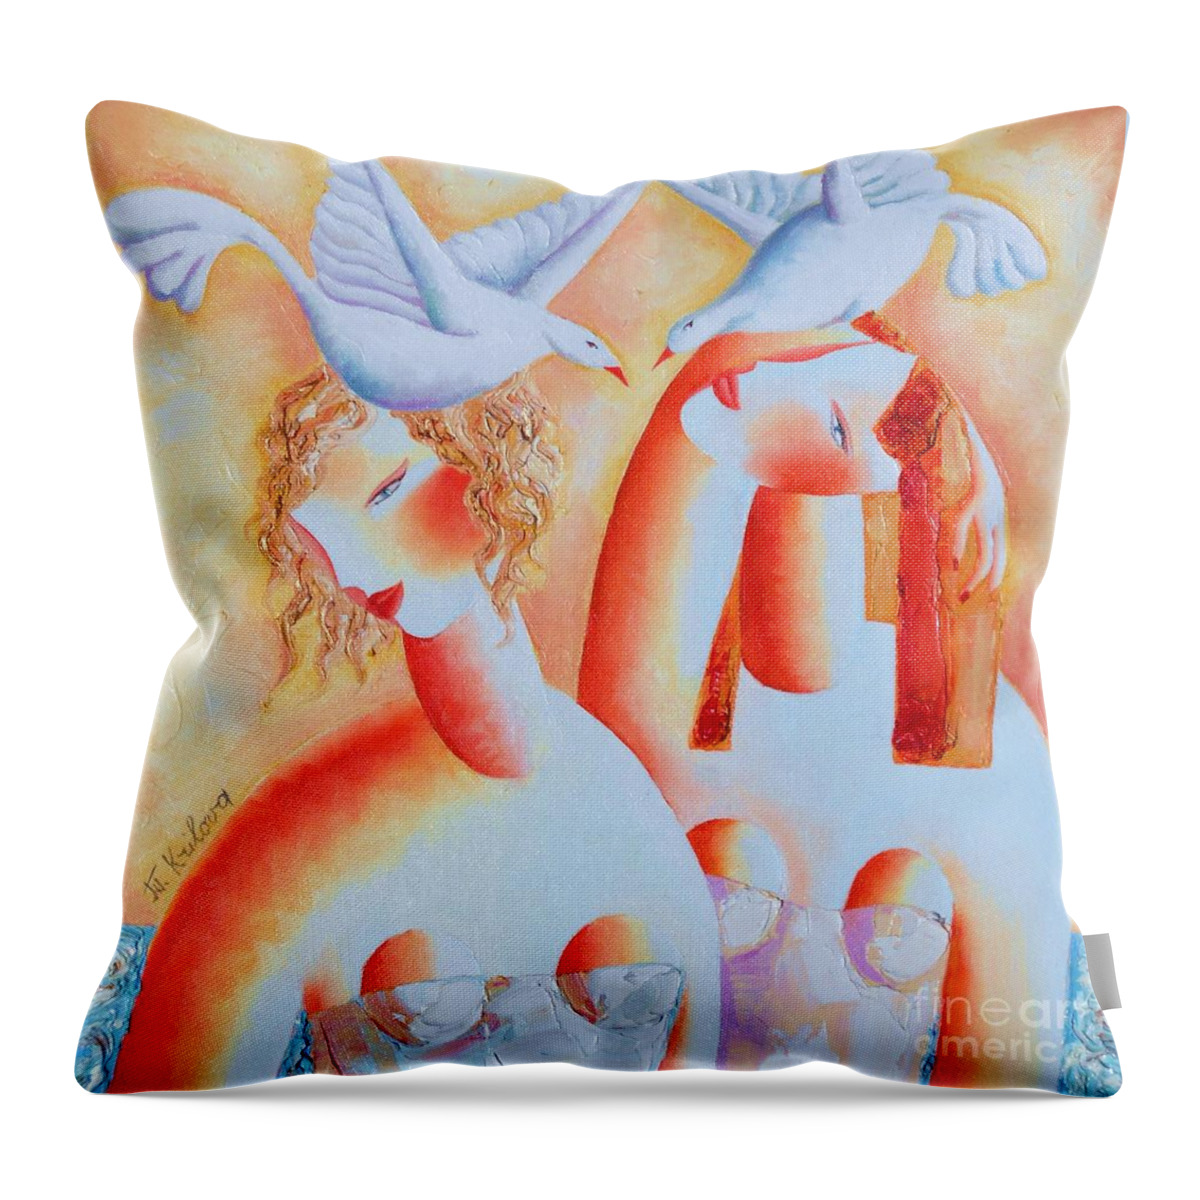 Tatjana Krilova Throw Pillow featuring the painting Two Ambers by Tatjana Krilova